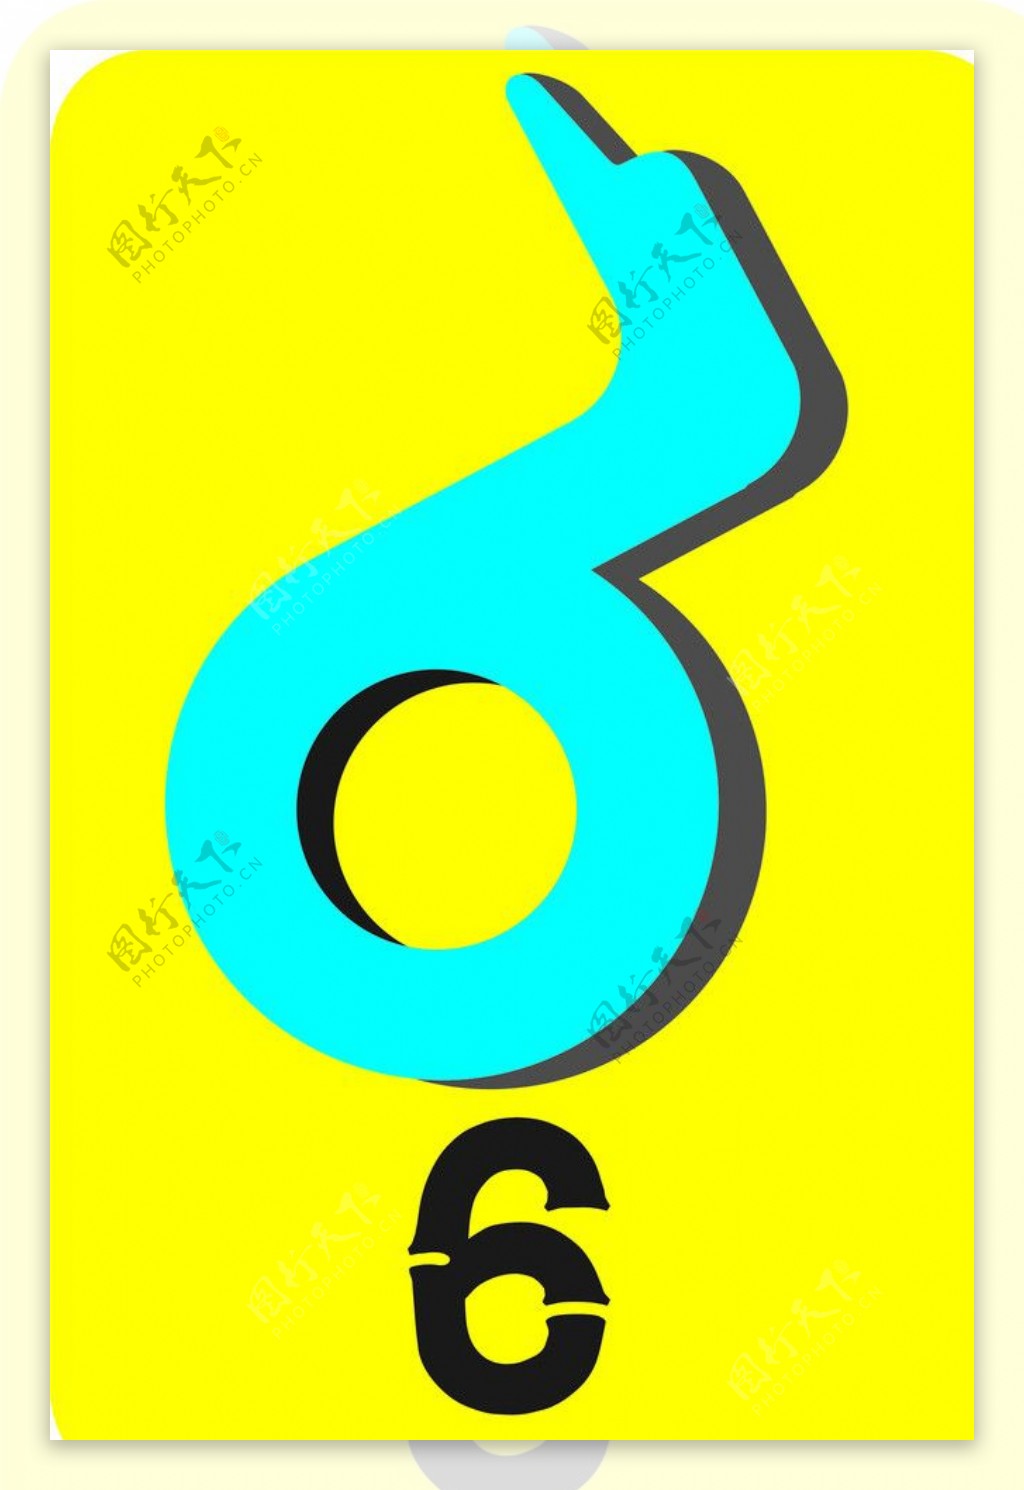 6的变形logo图片